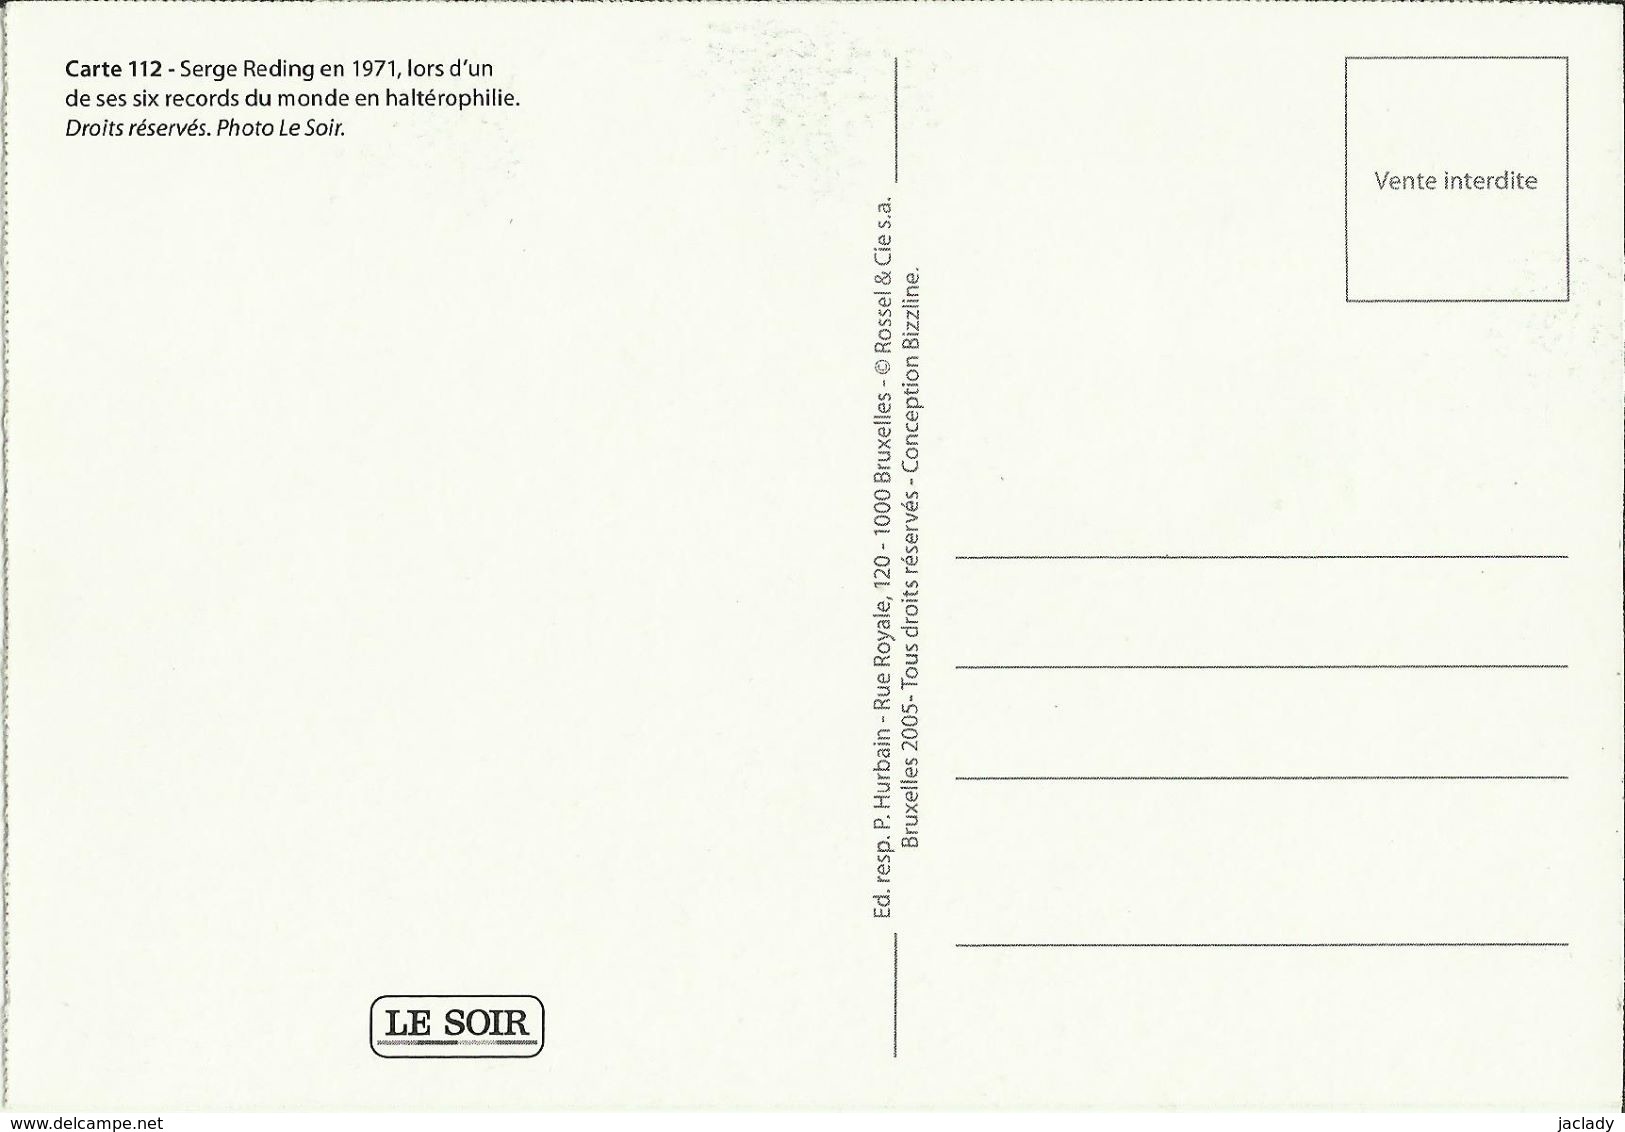 BELGIQUE - Carte N° 112 Du SOIR -- Serge Reding En 1971, Lors D'un De Ses 6 Records Du Monde En Haltérophilie. - Gewichtheffen